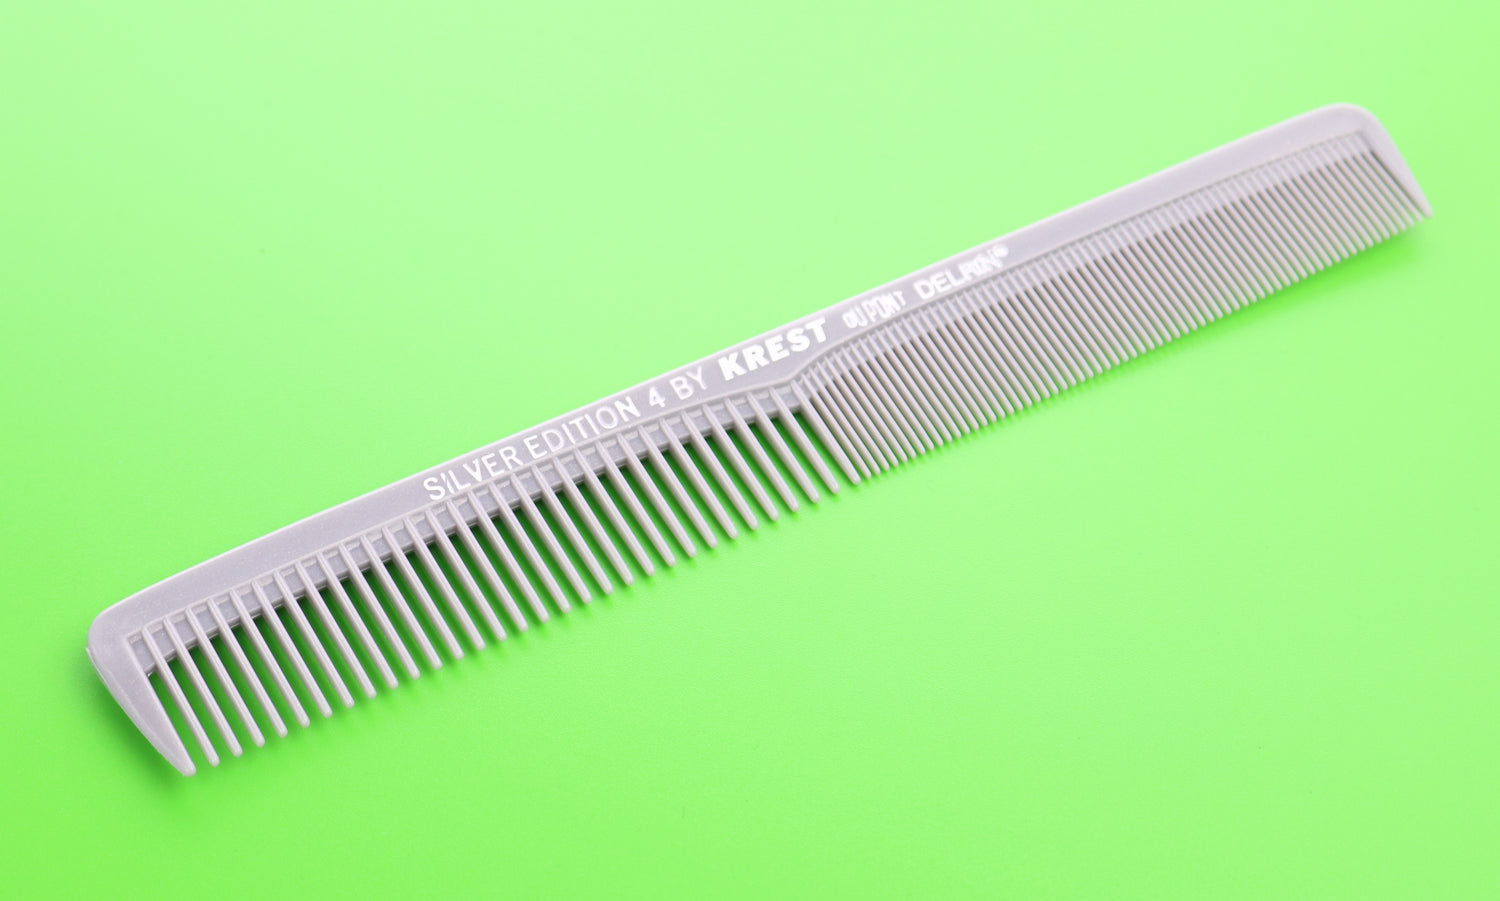 comb barber comb hair cutting comb hair comb  barber clippers  krest combs 